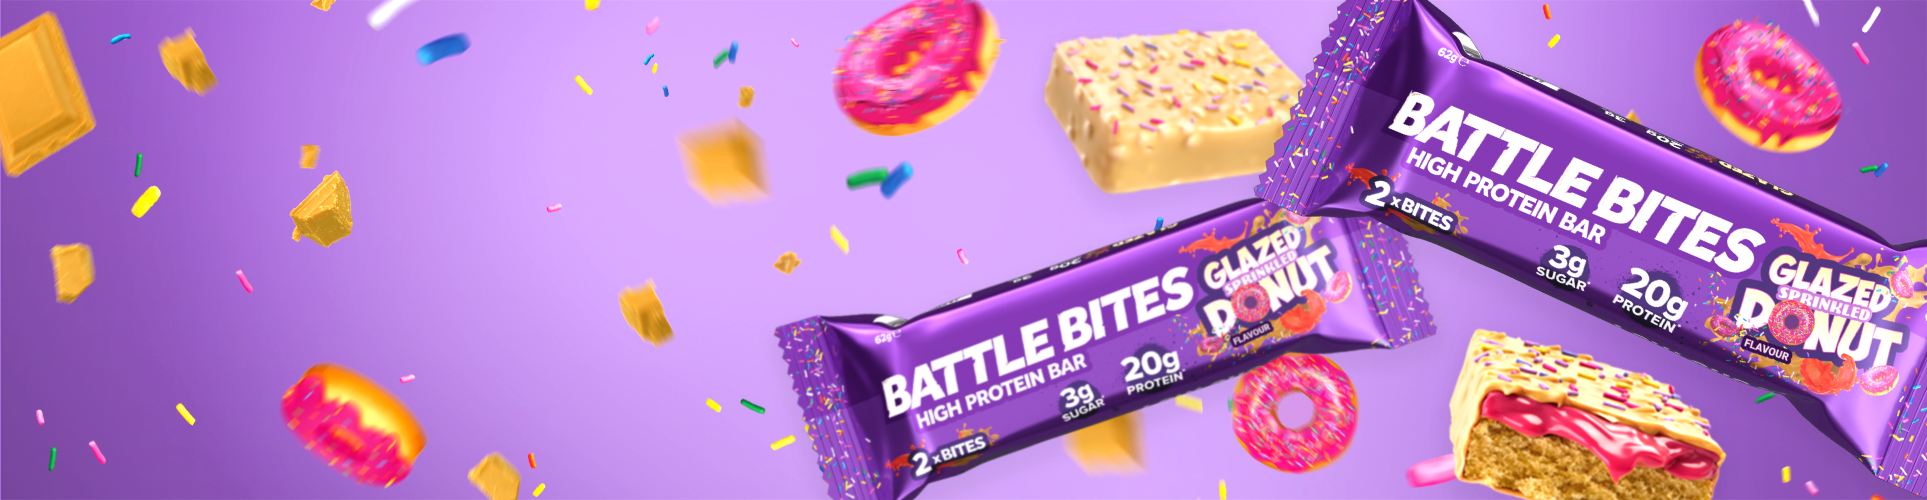 Battle Bites | High Protein, Low Sugar Protein Bars